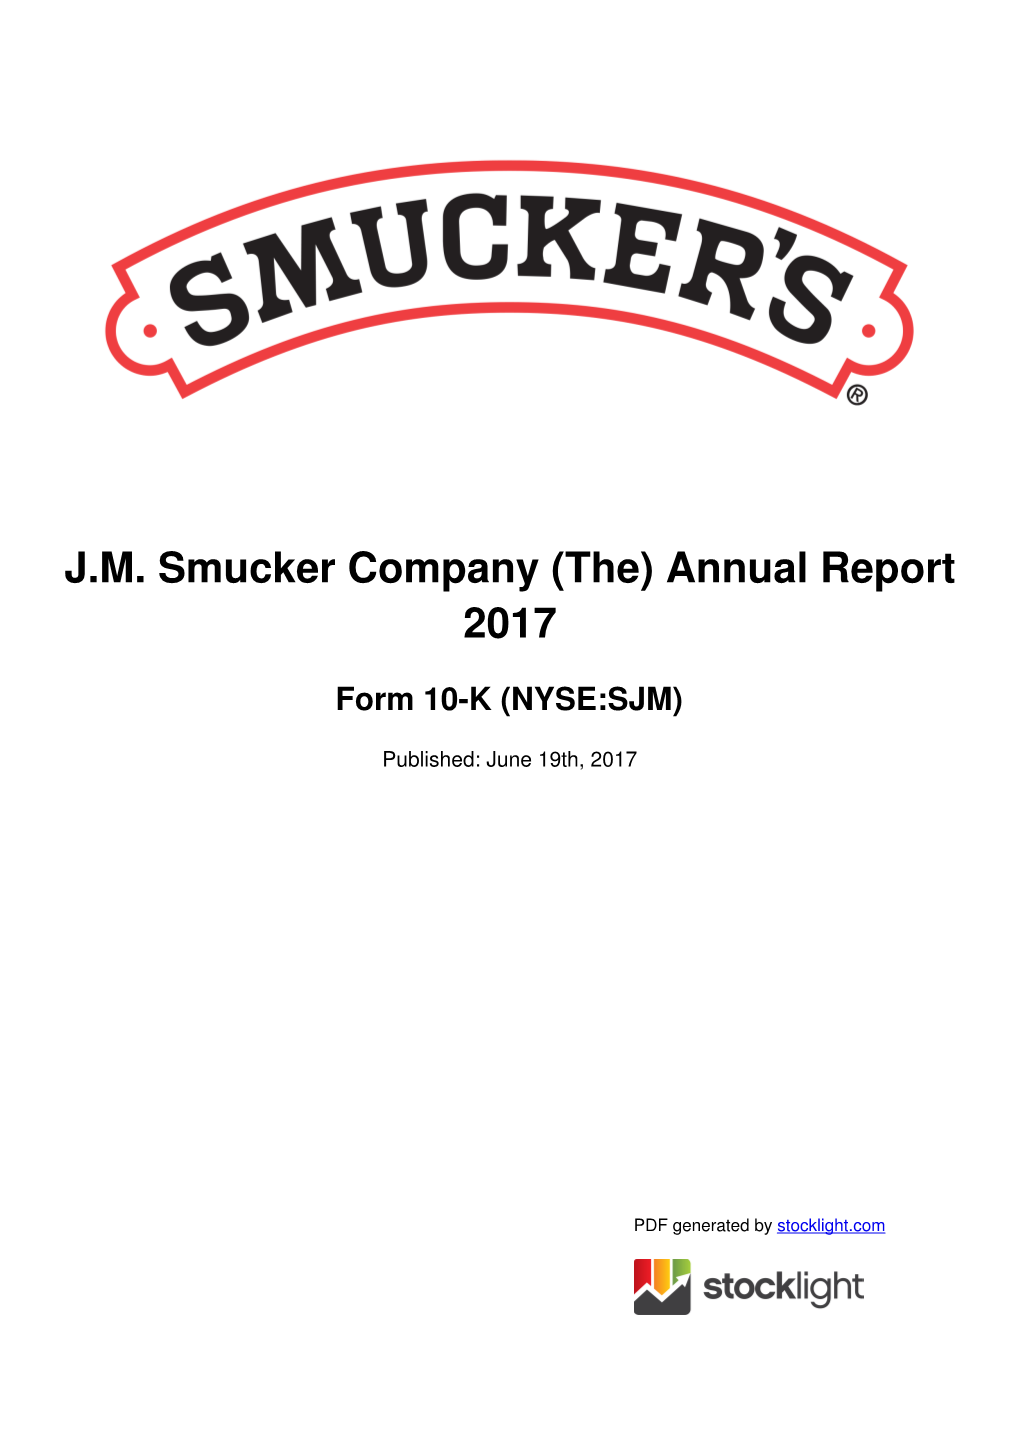 JM Smucker Company (The) Annual Report 2017